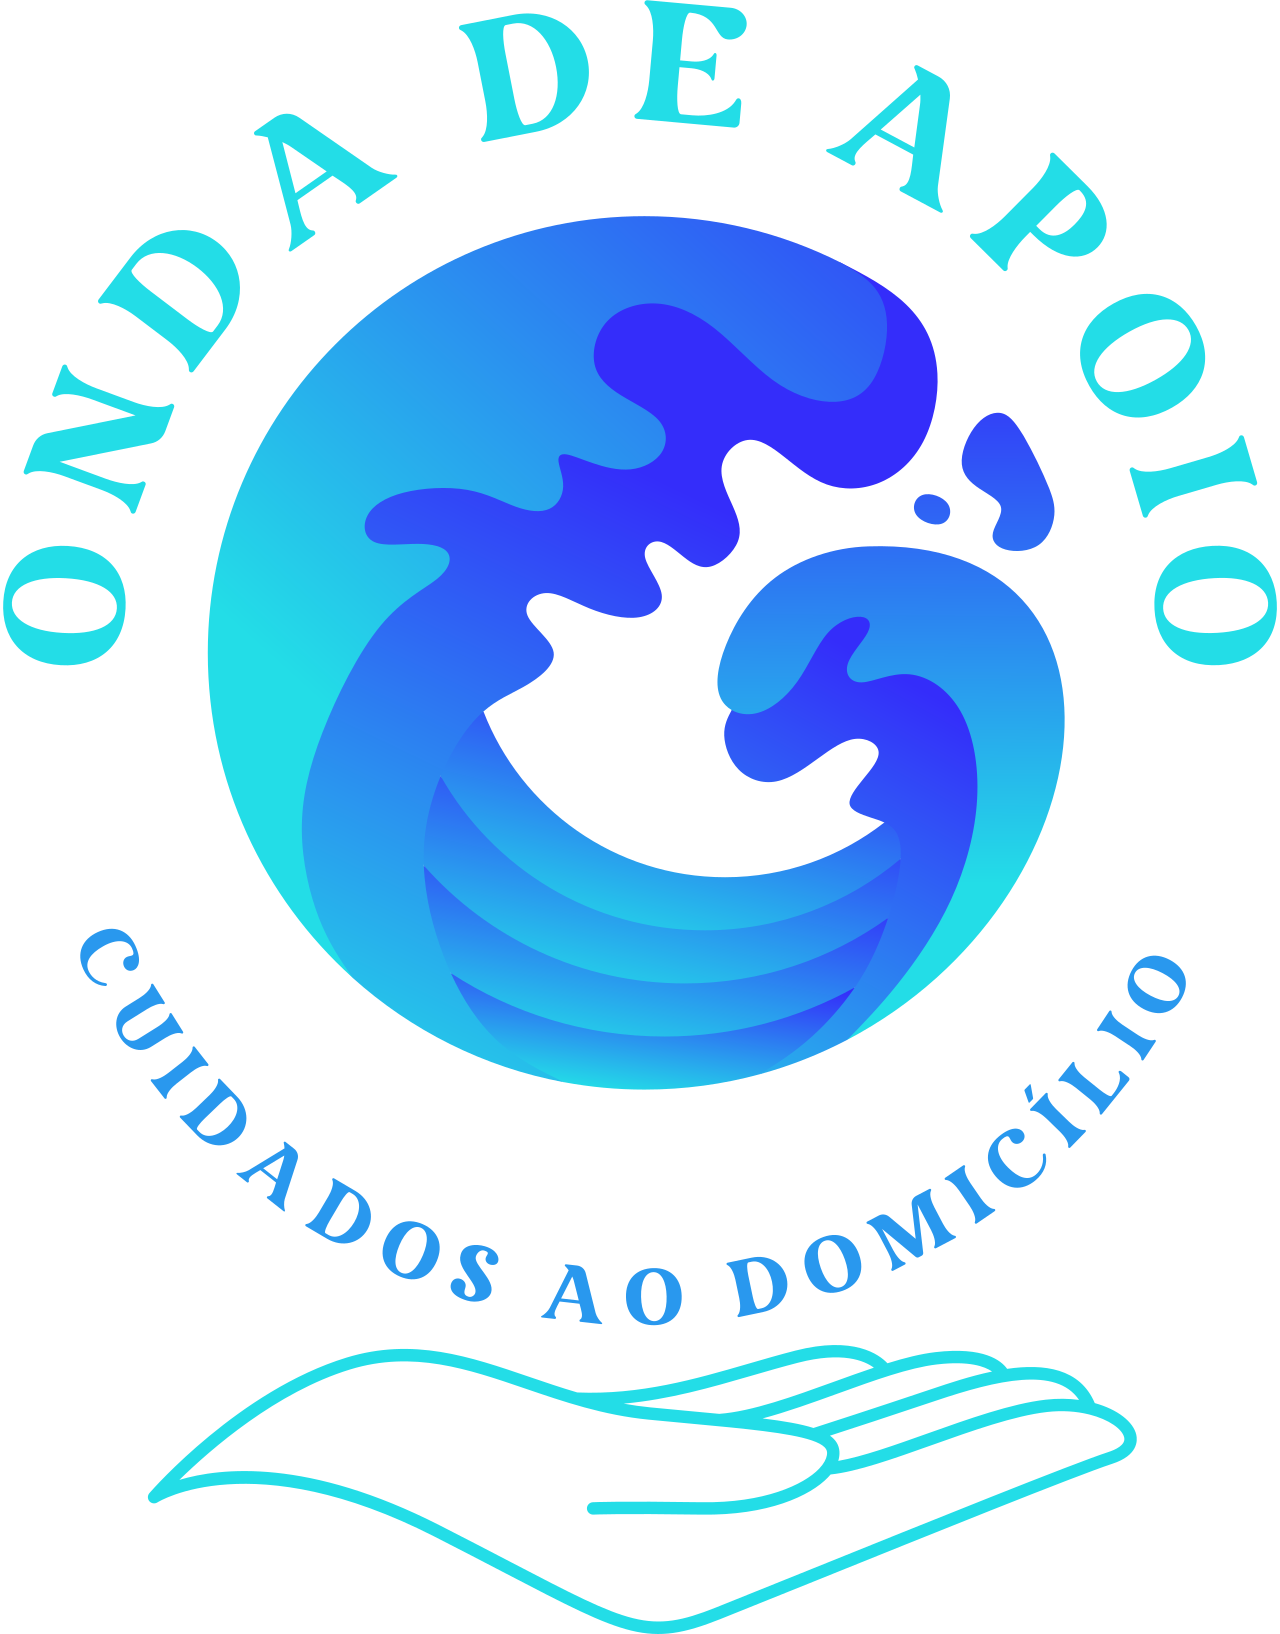 ONDA DE APOIO's logo